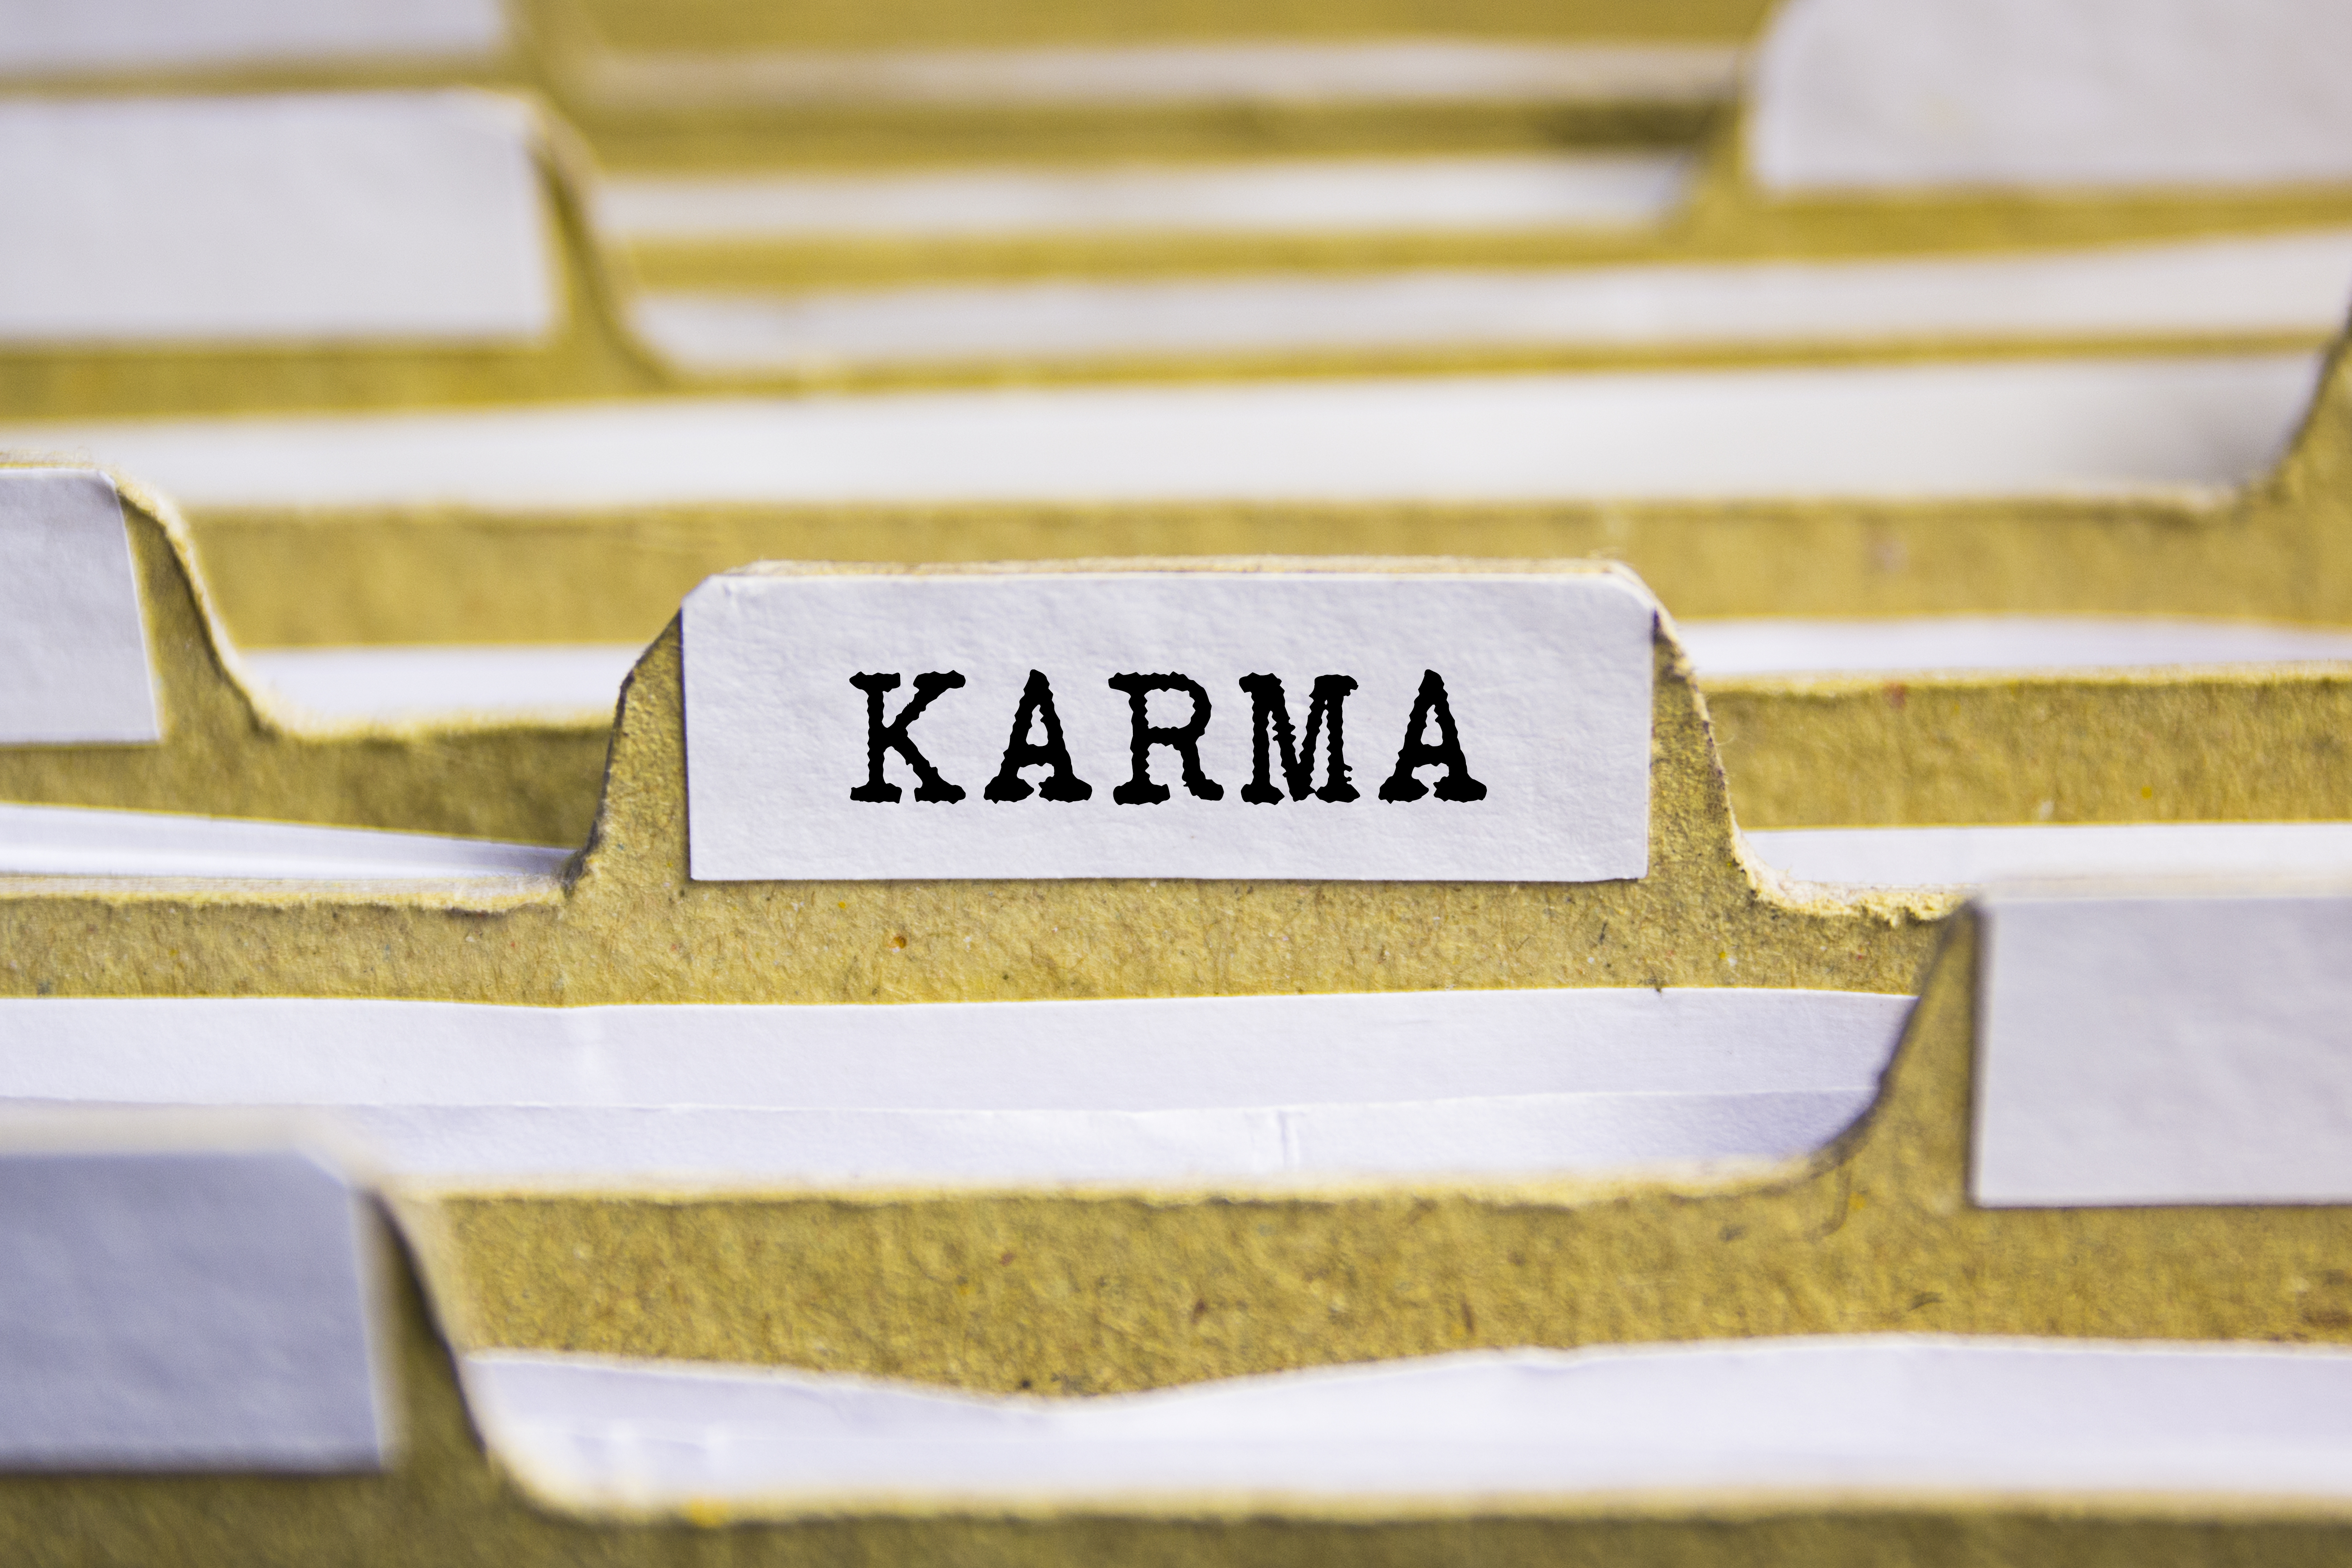 Das Wort "Karma" gedruckt auf einer Akte | Quelle: Shutterstock/Sinart Creative